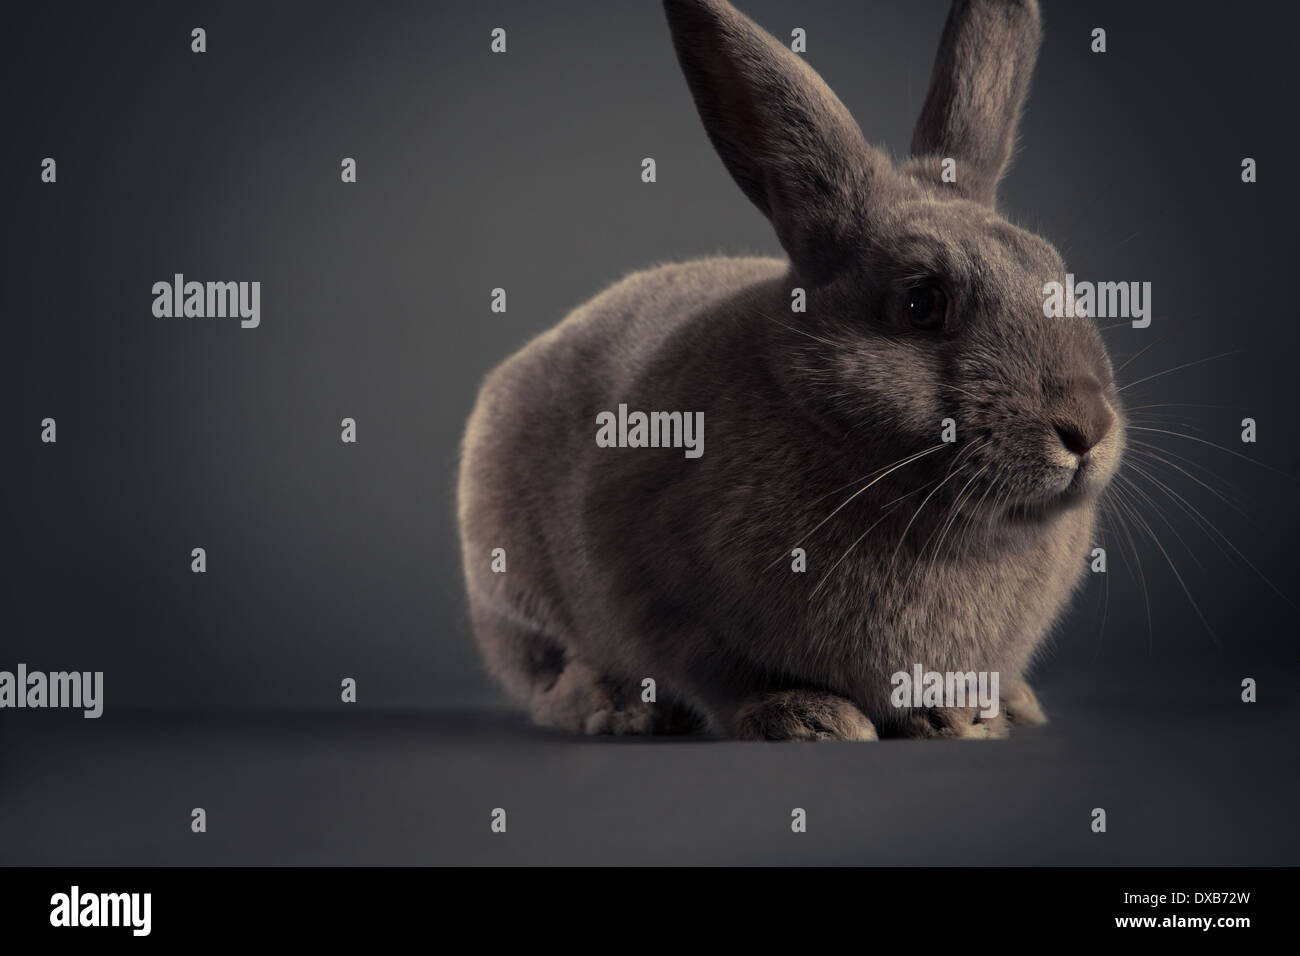 Retrato de estudio de un conejo. Foto de stock